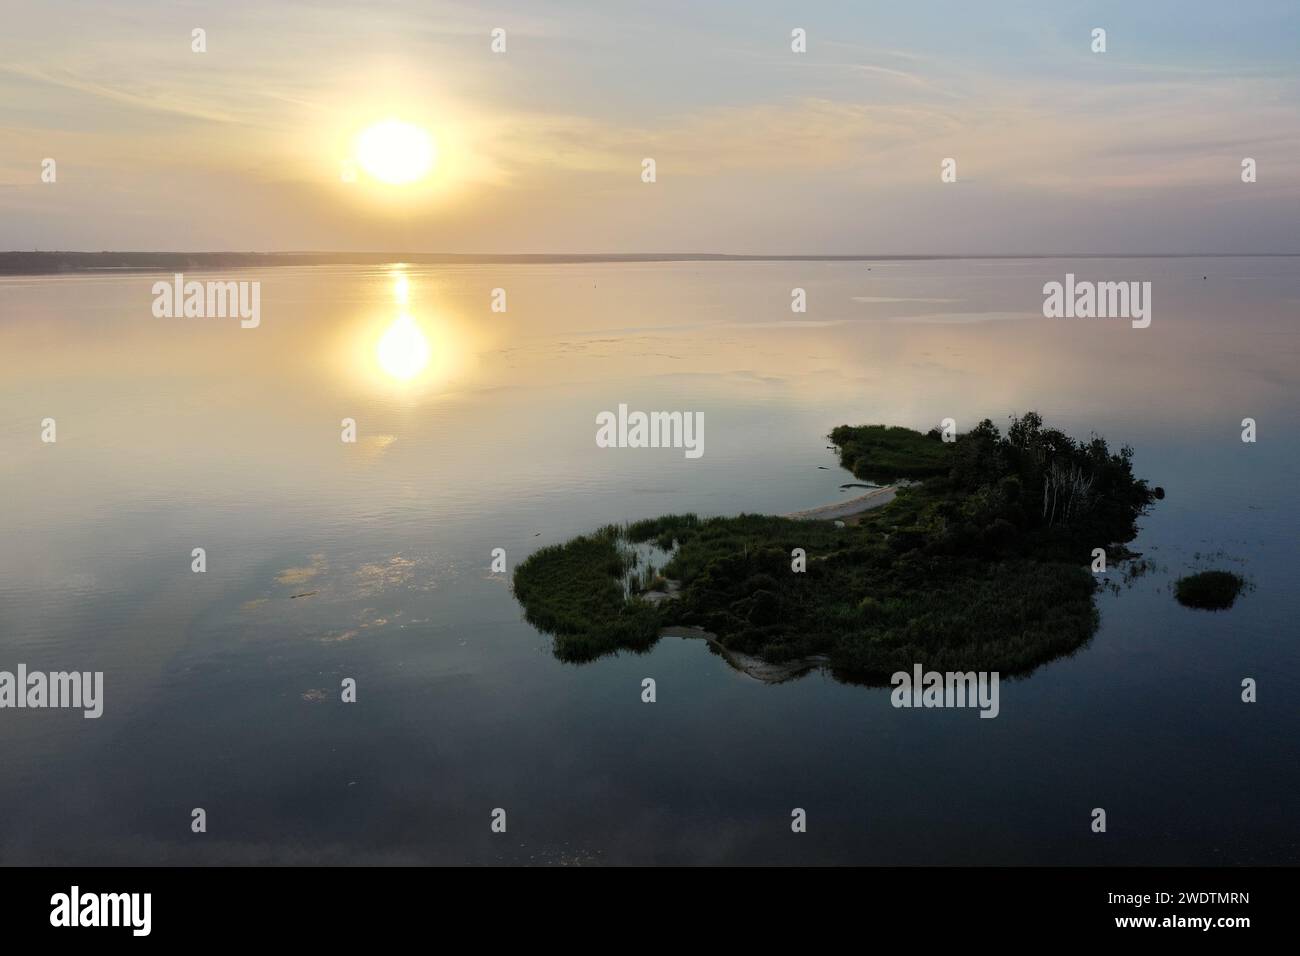 Sonnenuntergang auf dem See und einer kleinen Insel, von einer Drohne erschossen. Hochwertige Fotos Stockfoto